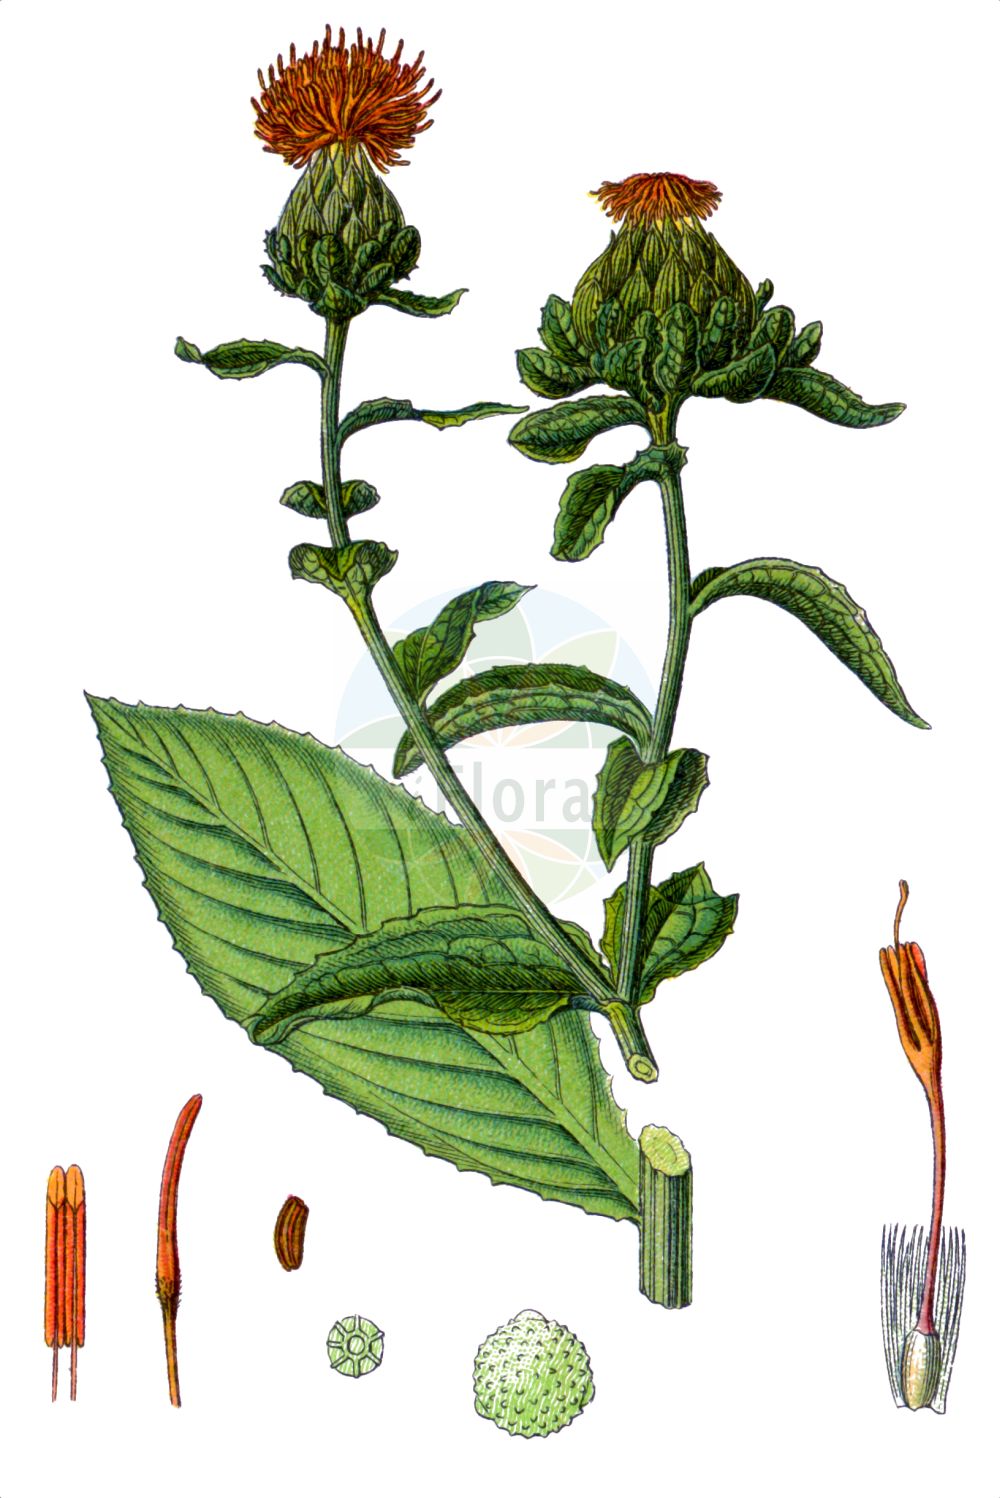 Historische Abbildung von Carthamus tinctorius (Safflower). Das Bild zeigt Blatt, Bluete, Frucht und Same. ---- Historical Drawing of Carthamus tinctorius (Safflower). The image is showing leaf, flower, fruit and seed.(Carthamus tinctorius,Safflower,Carthamus tinctorius,Carthamus,Asteraceae,Korbblütengewächse,Daisy family,Blatt,Bluete,Frucht,Same,leaf,flower,fruit,seed,Sturm (1796f))